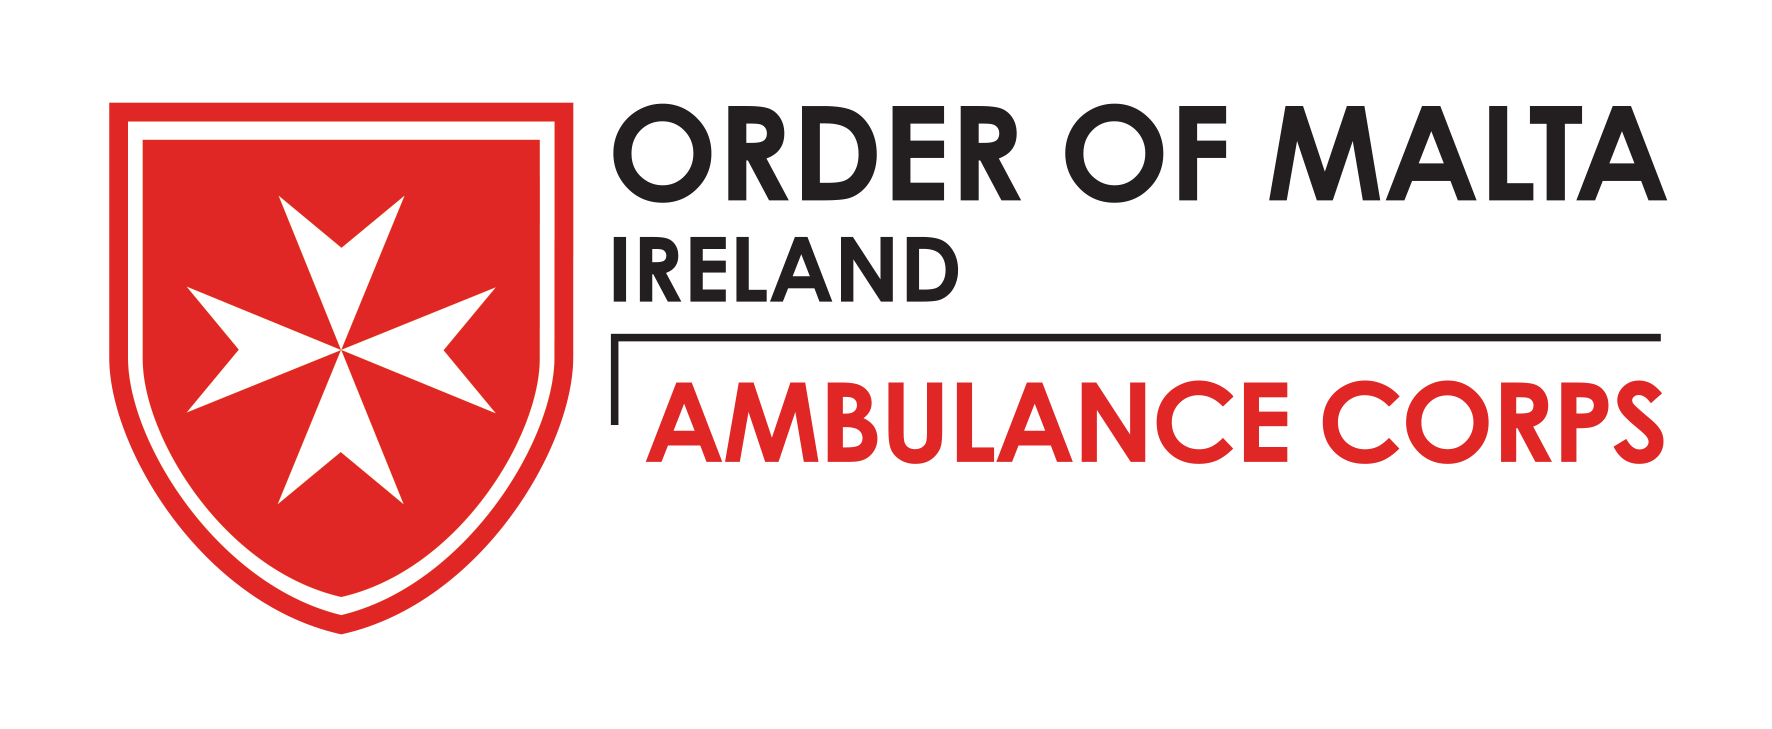 Order of Malta Ambulance Corps - Wikipedia